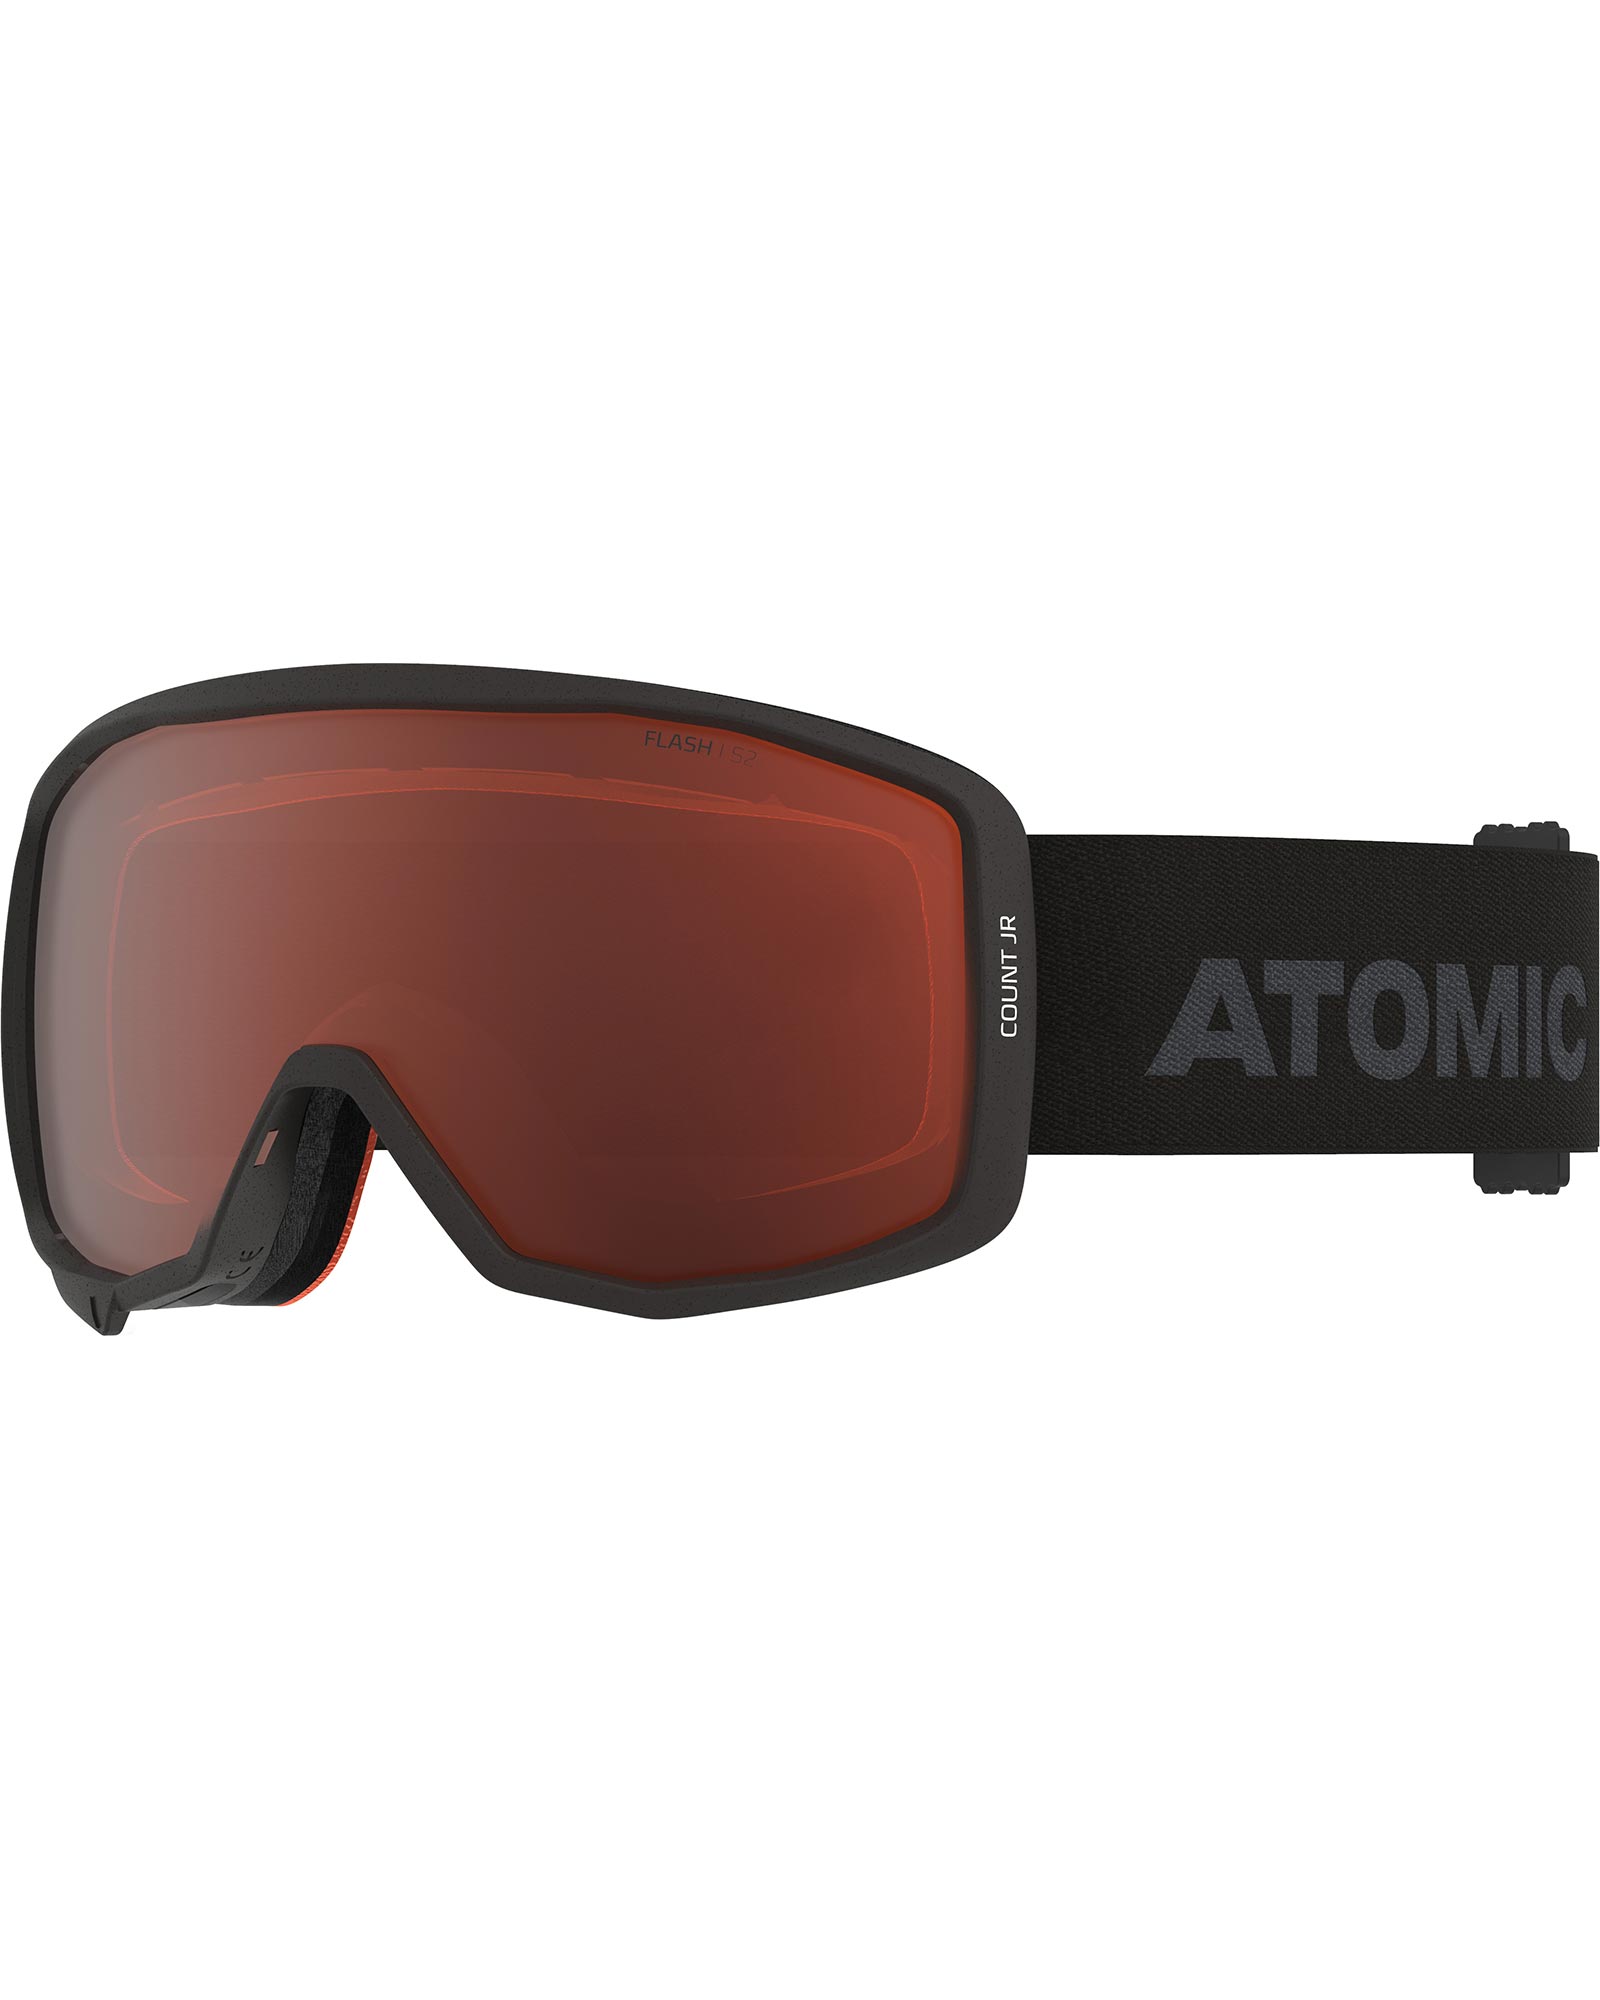 Atomic Hawx Prime Xtd 120 Tech Gw Ski Boots 2021